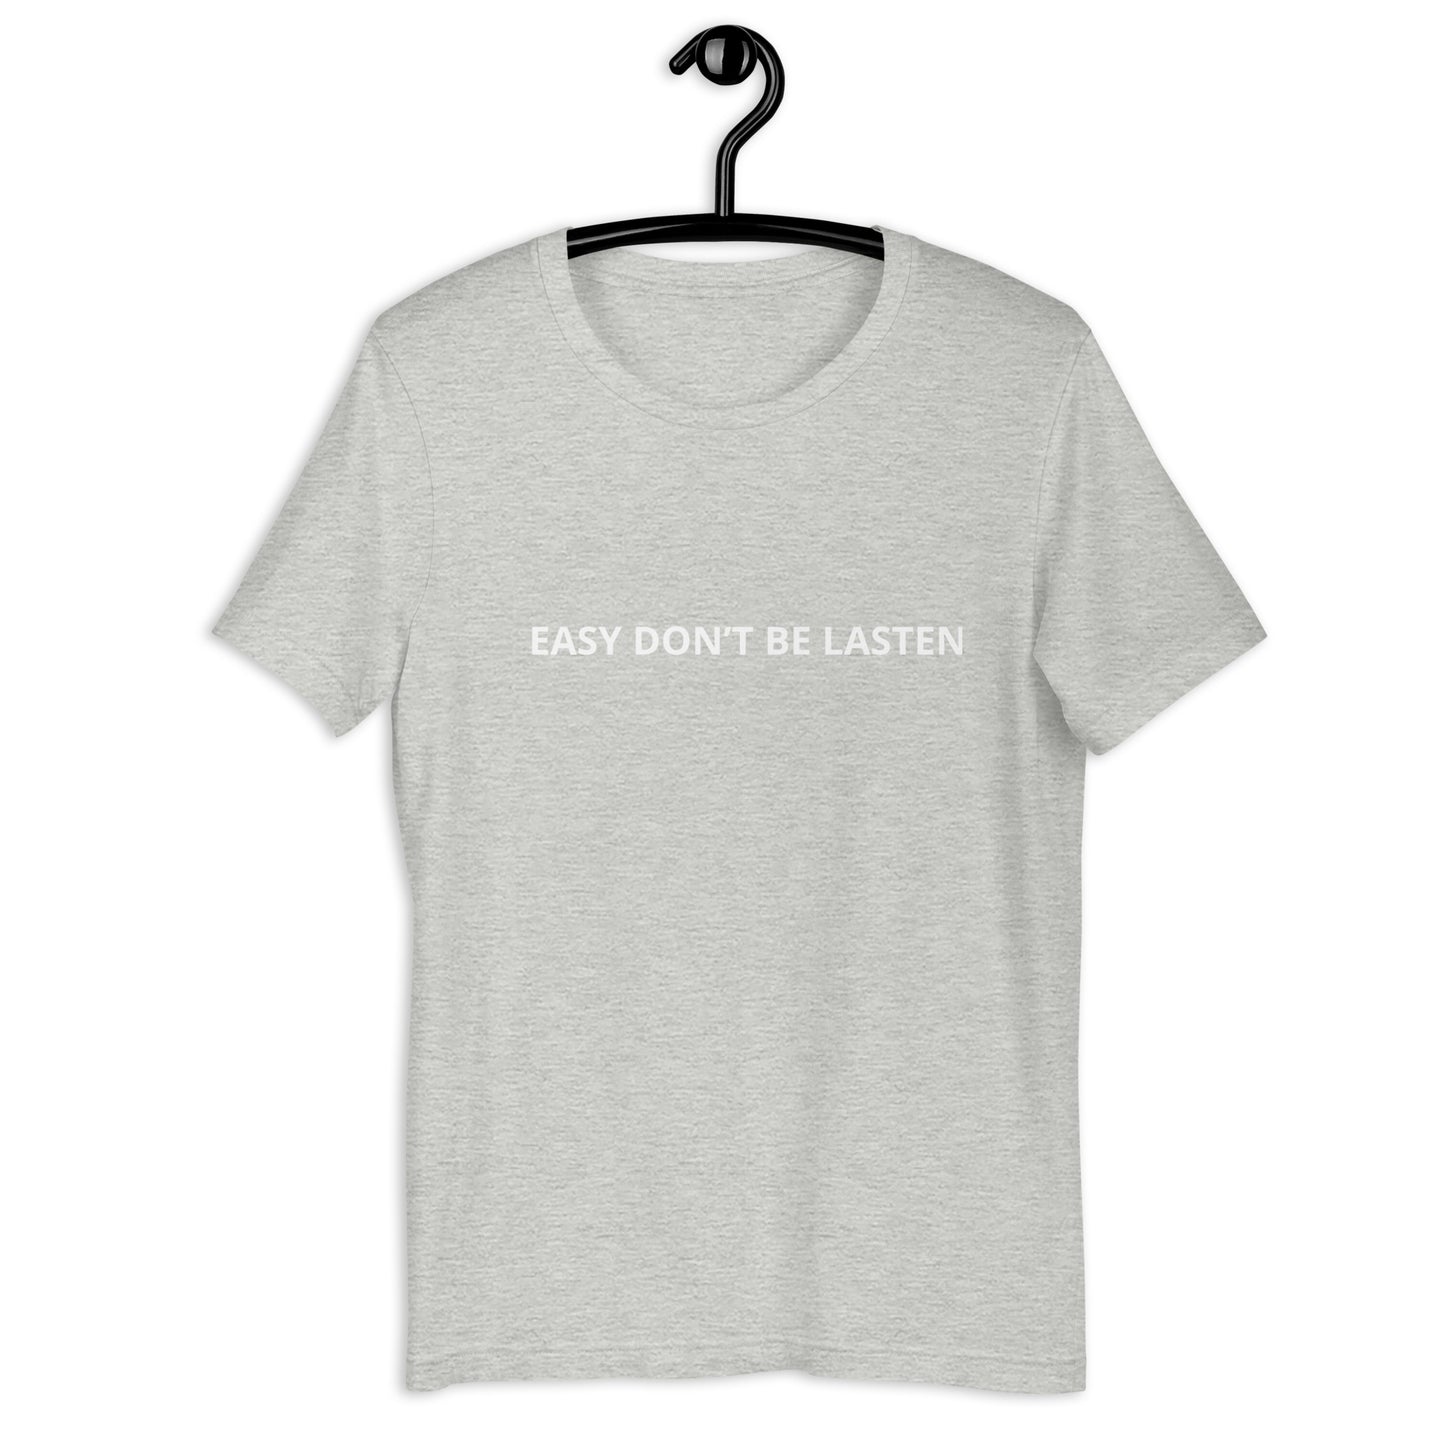 EASY DON’T BE LASTEN  Unisex t-shirt